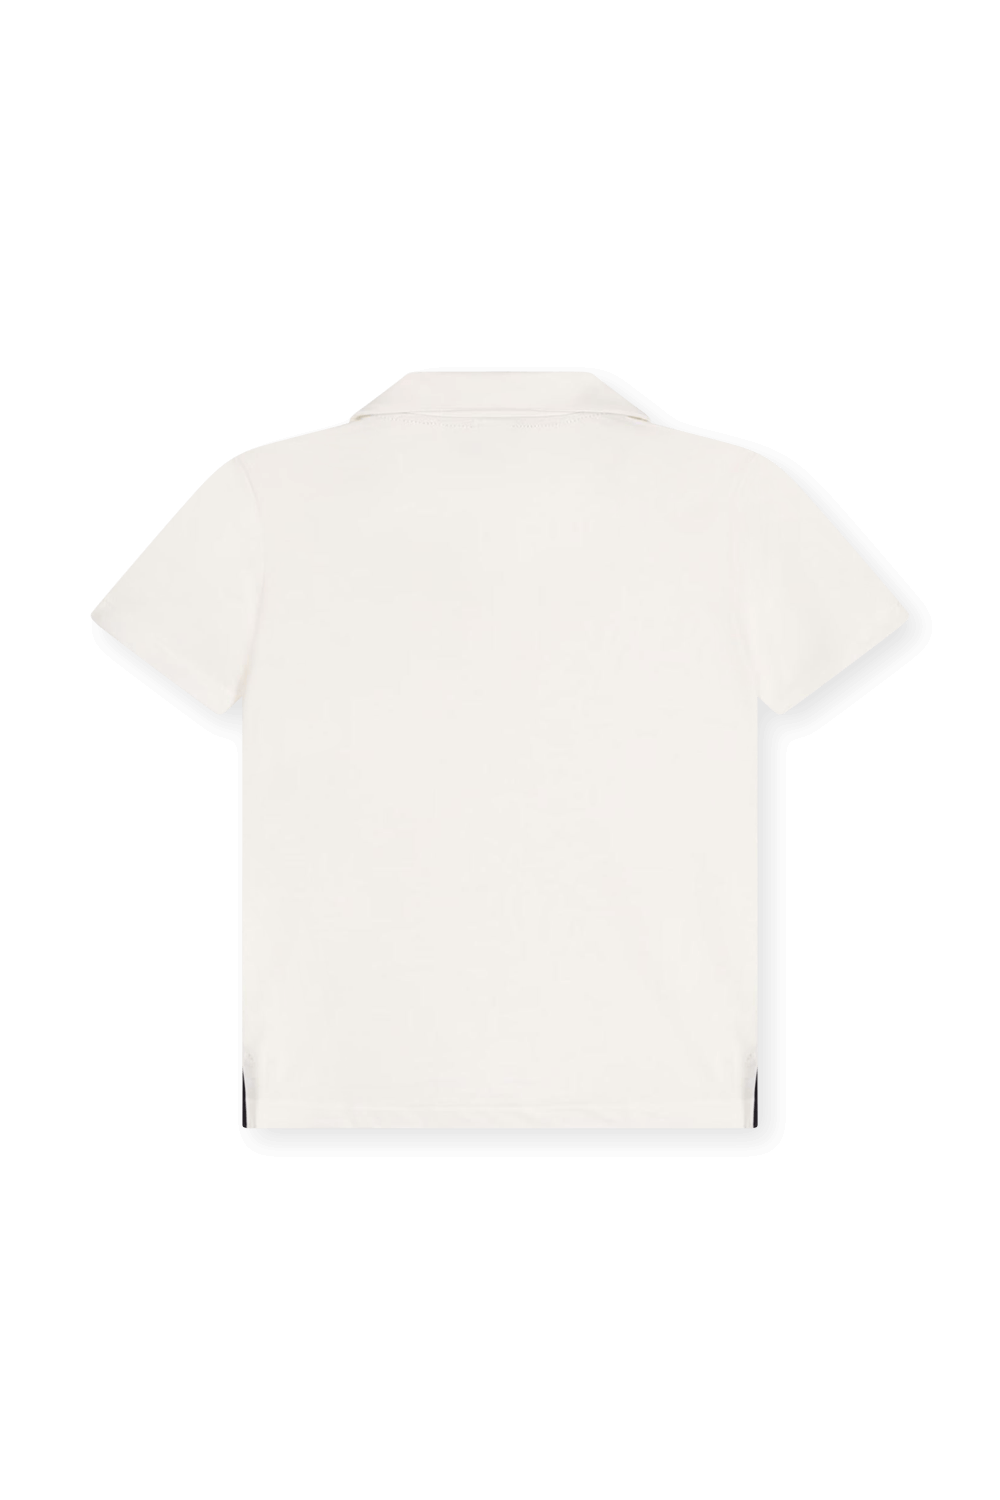 חולצת פולו - גילאי 3-5 PETIT BATEAU